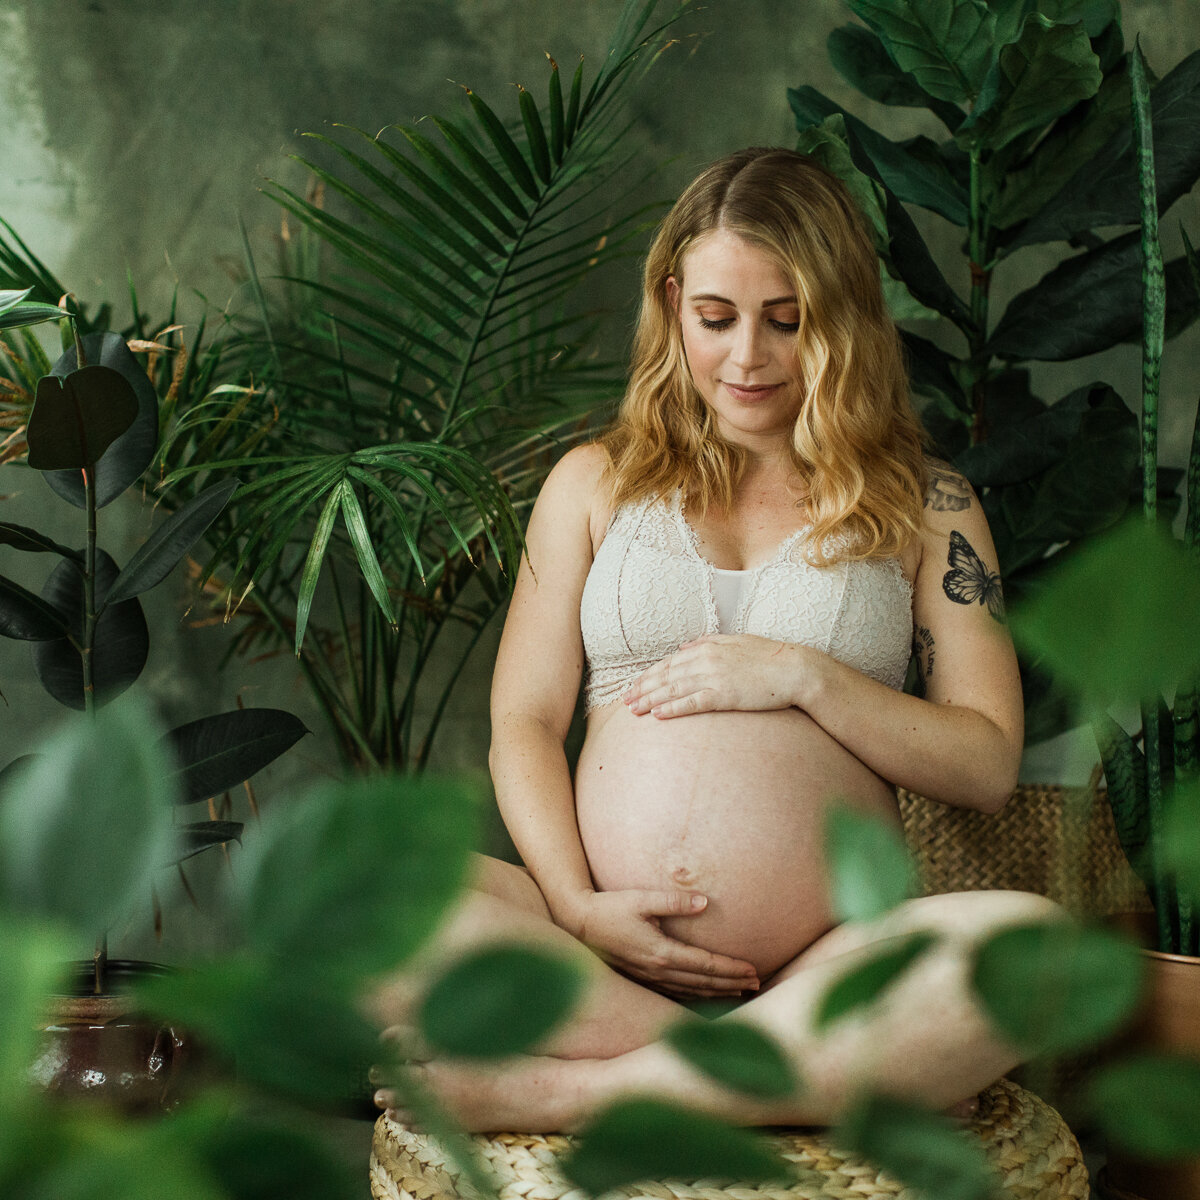 Sarah Maternity Session | Sneak Peak